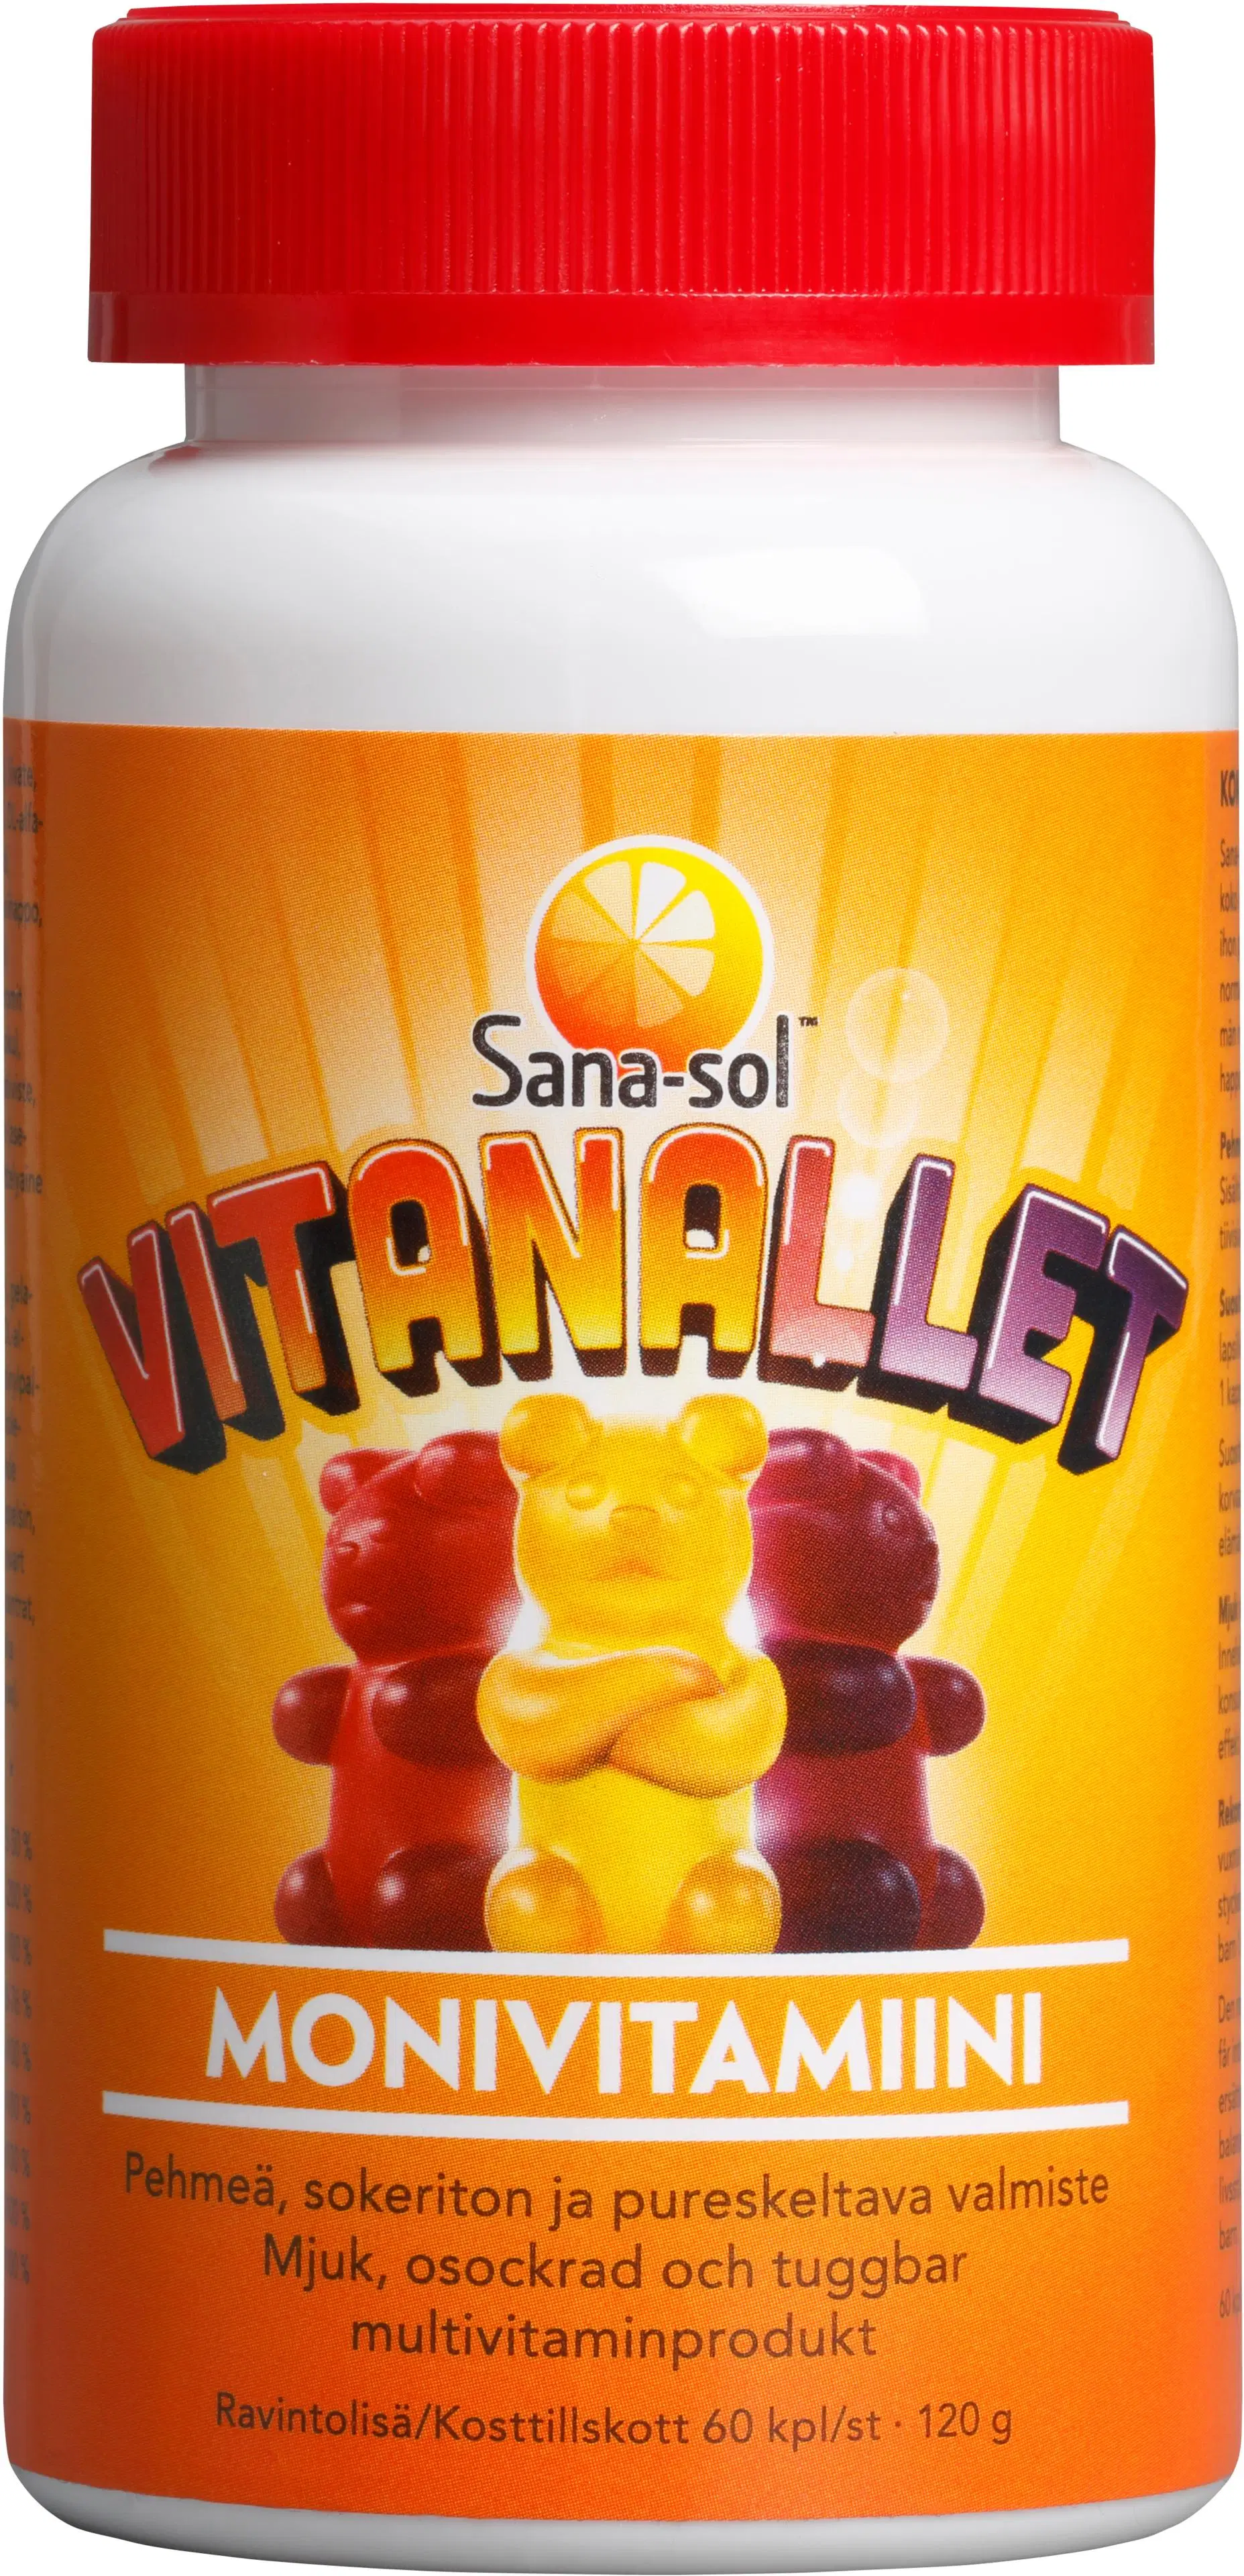 Sana-sol Vitanallet Vadelman-, appelsiinin- ja mustikanmakuinen pehmeä, sokeriton ja pureskeltava monivitamiinivalmiste 60kpl